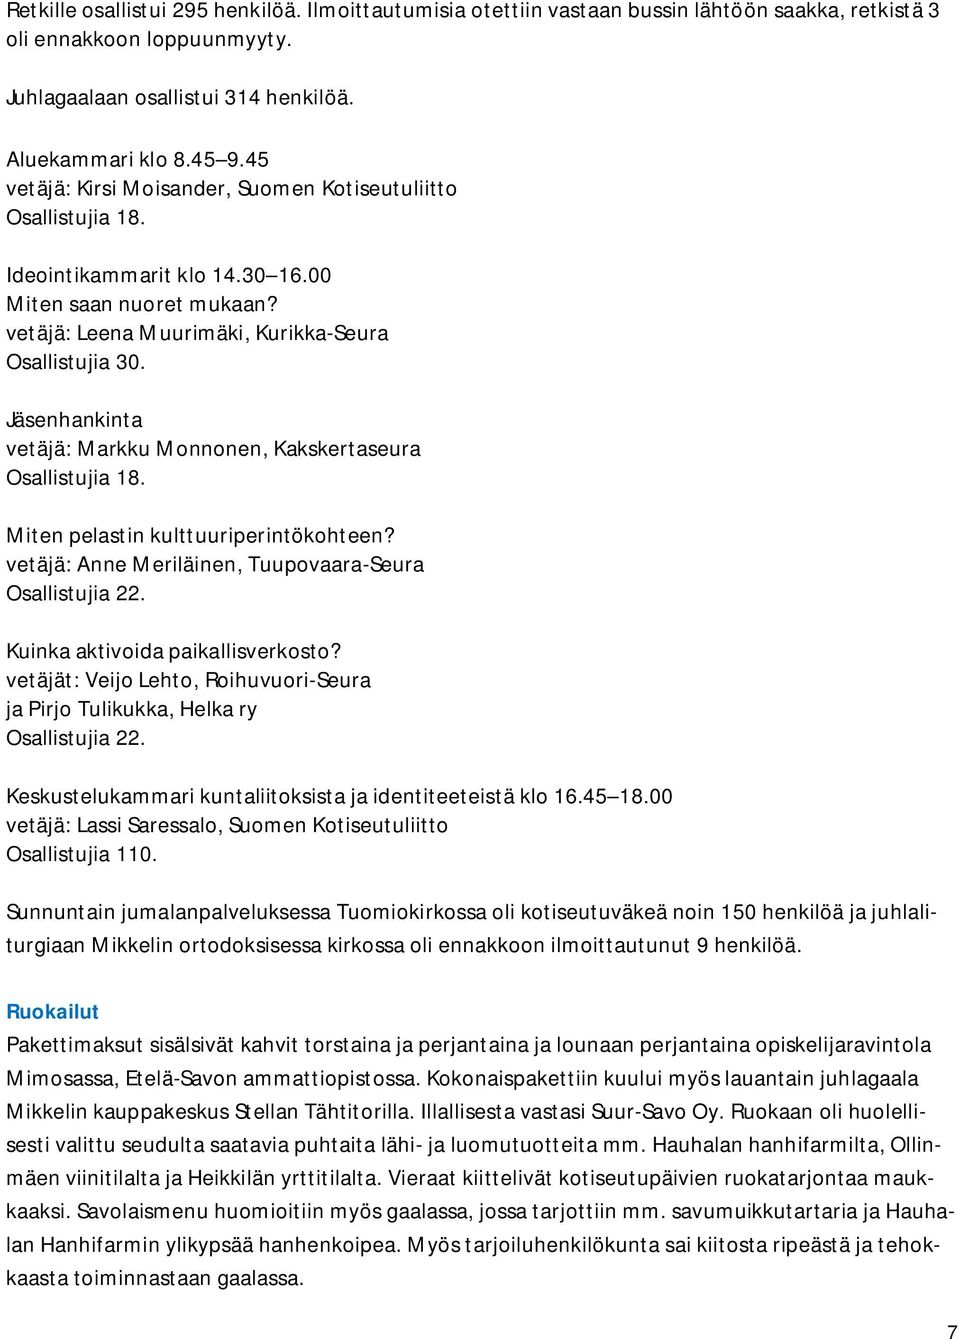 Jäsenhankinta vetäjä: Markku Monnonen, Kakskertaseura Osallistujia 18. Miten pelastin kulttuuriperintökohteen? vetäjä: Anne Meriläinen, Tuupovaara-Seura Osallistujia 22.